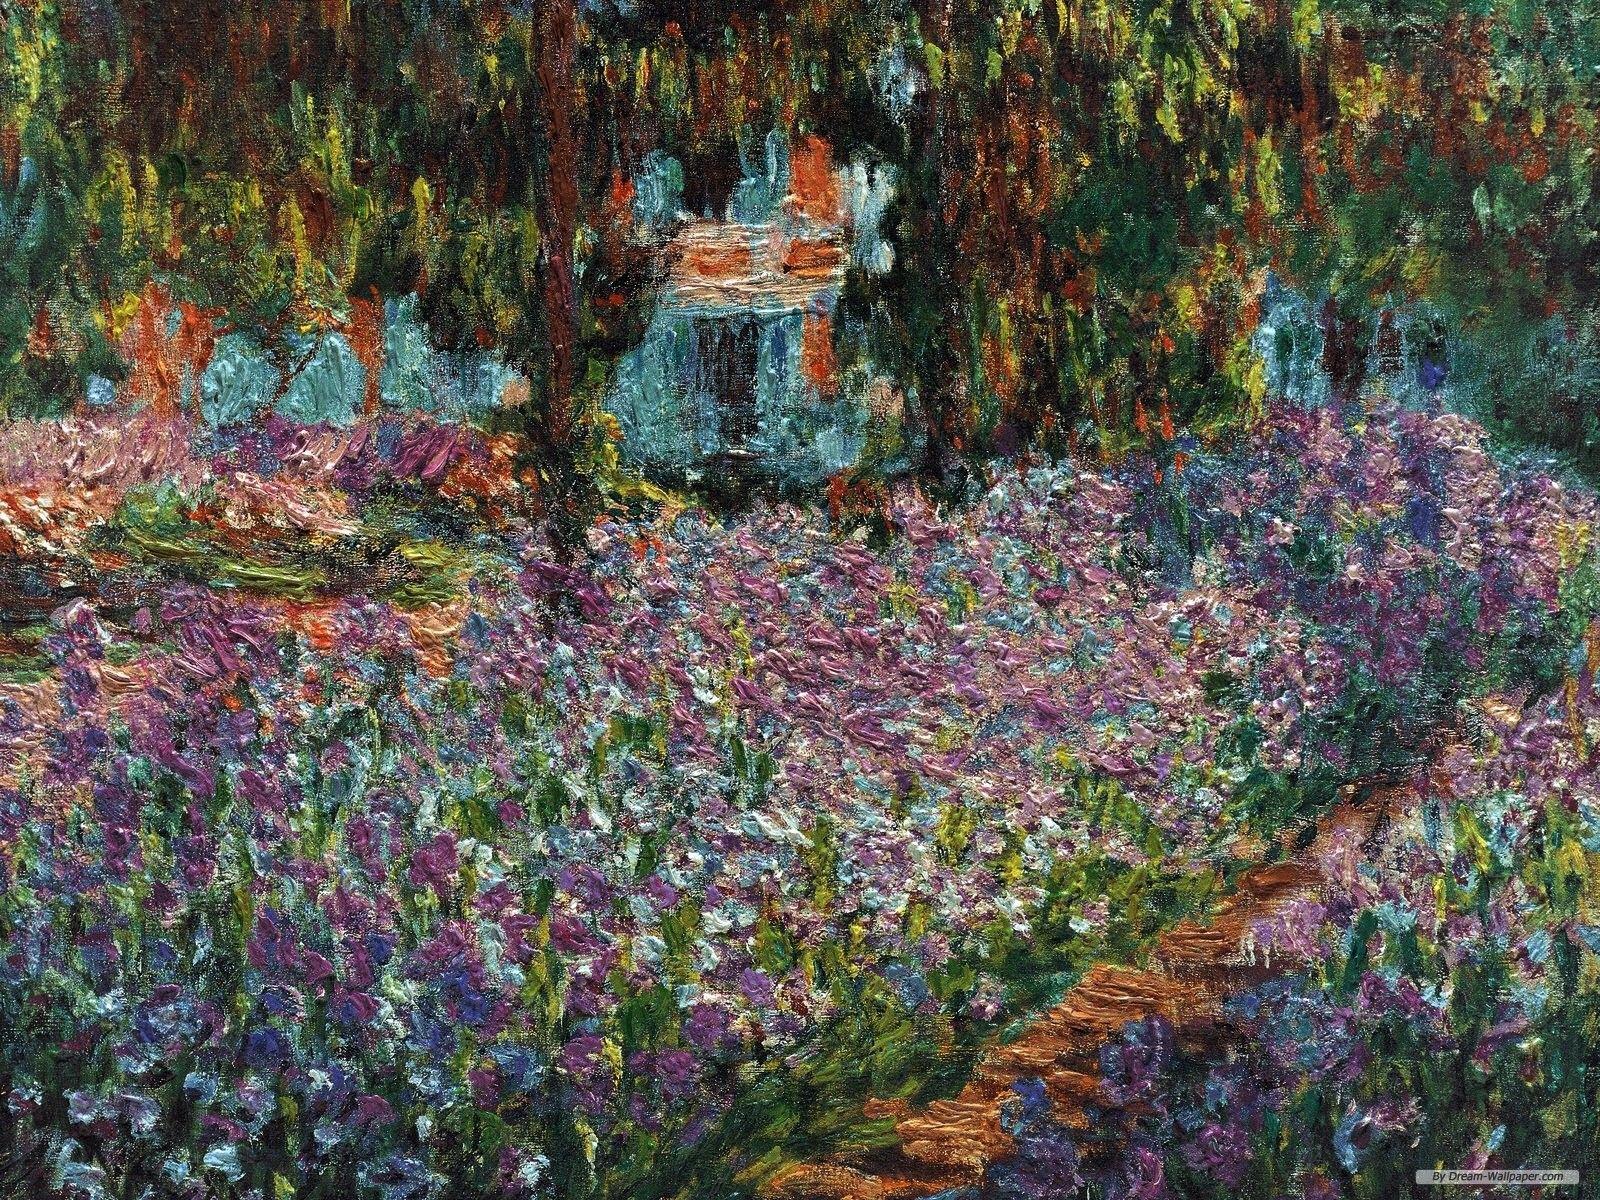 1600x1200 Hình nền miễn phí - Hình nền nghệ thuật miễn phí - Hình nền Claude Monet